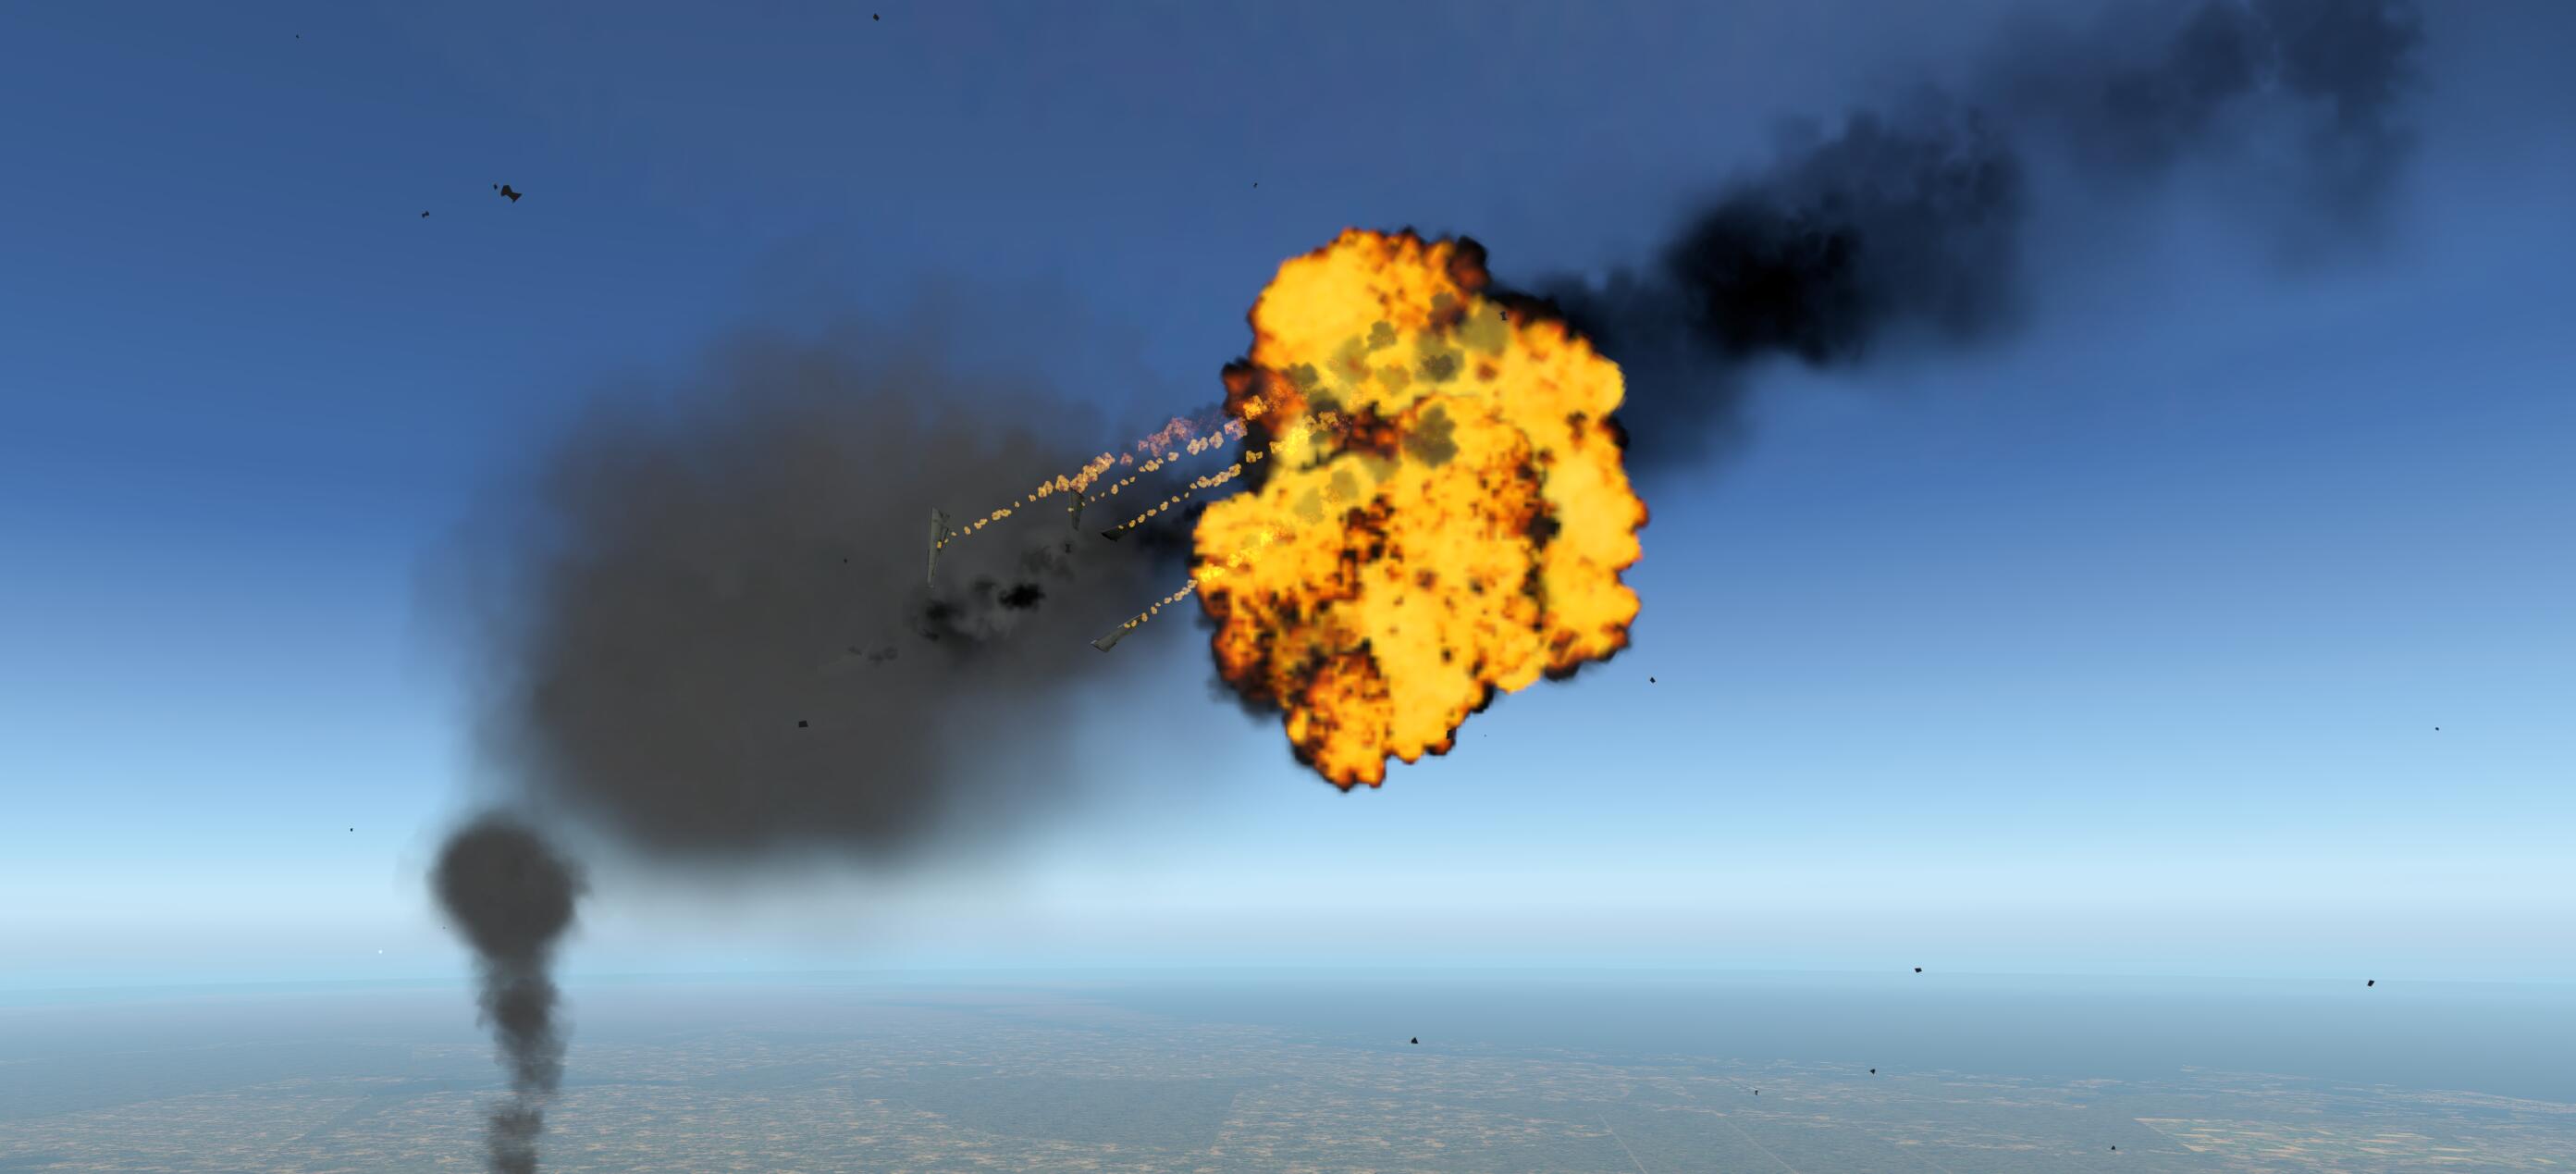 还记得马航MH17吗？被导弹击落的瞬间-4330 